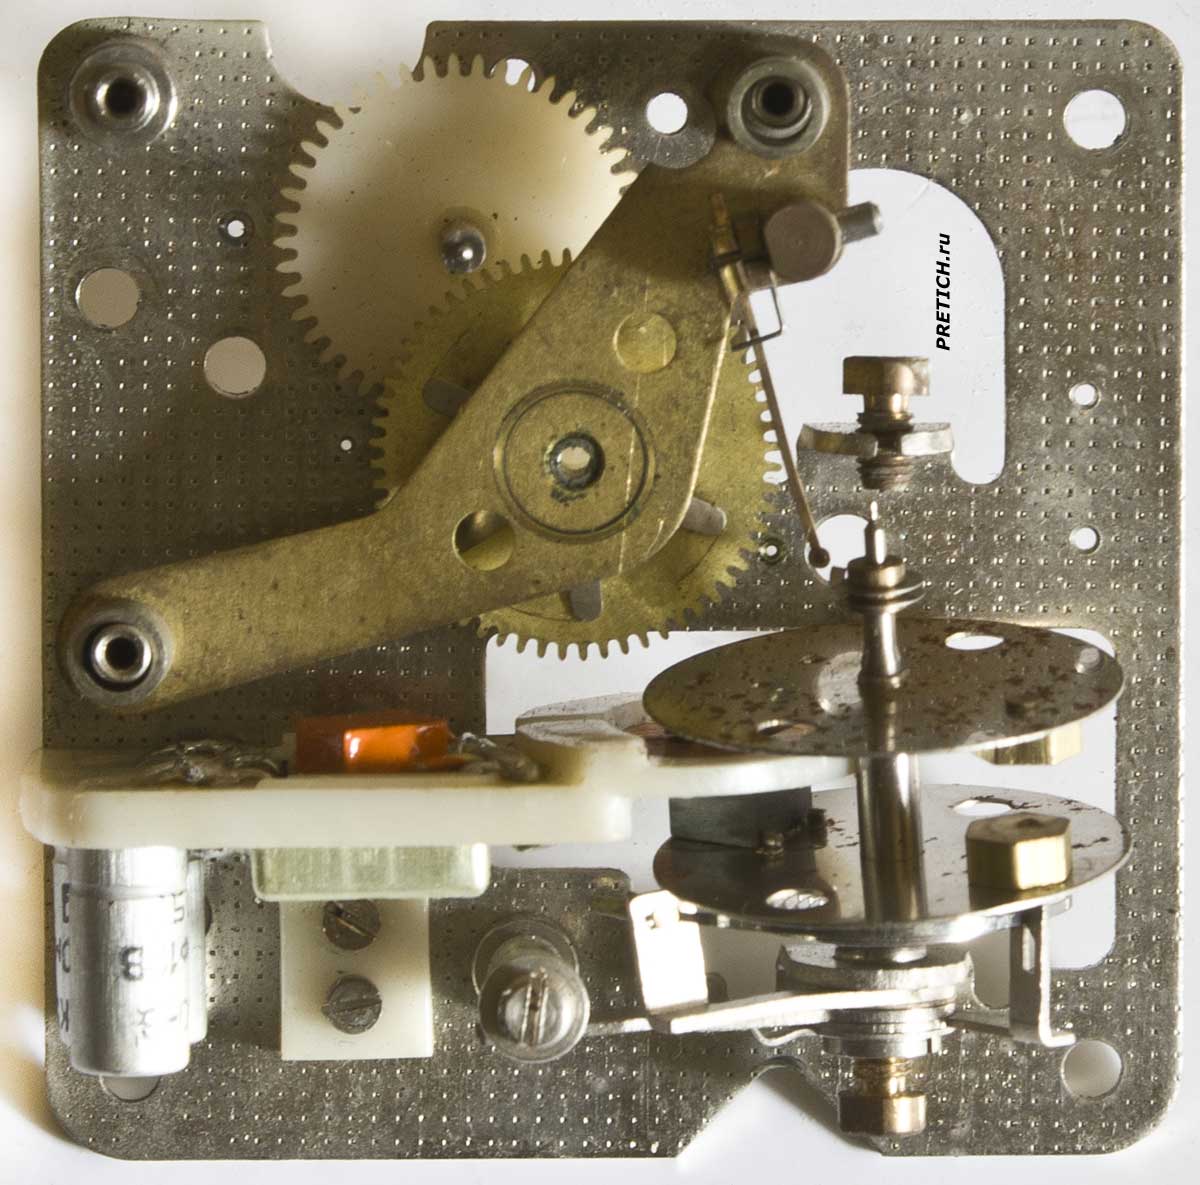 Разборка механизма Янтарь 65181, часы СССР